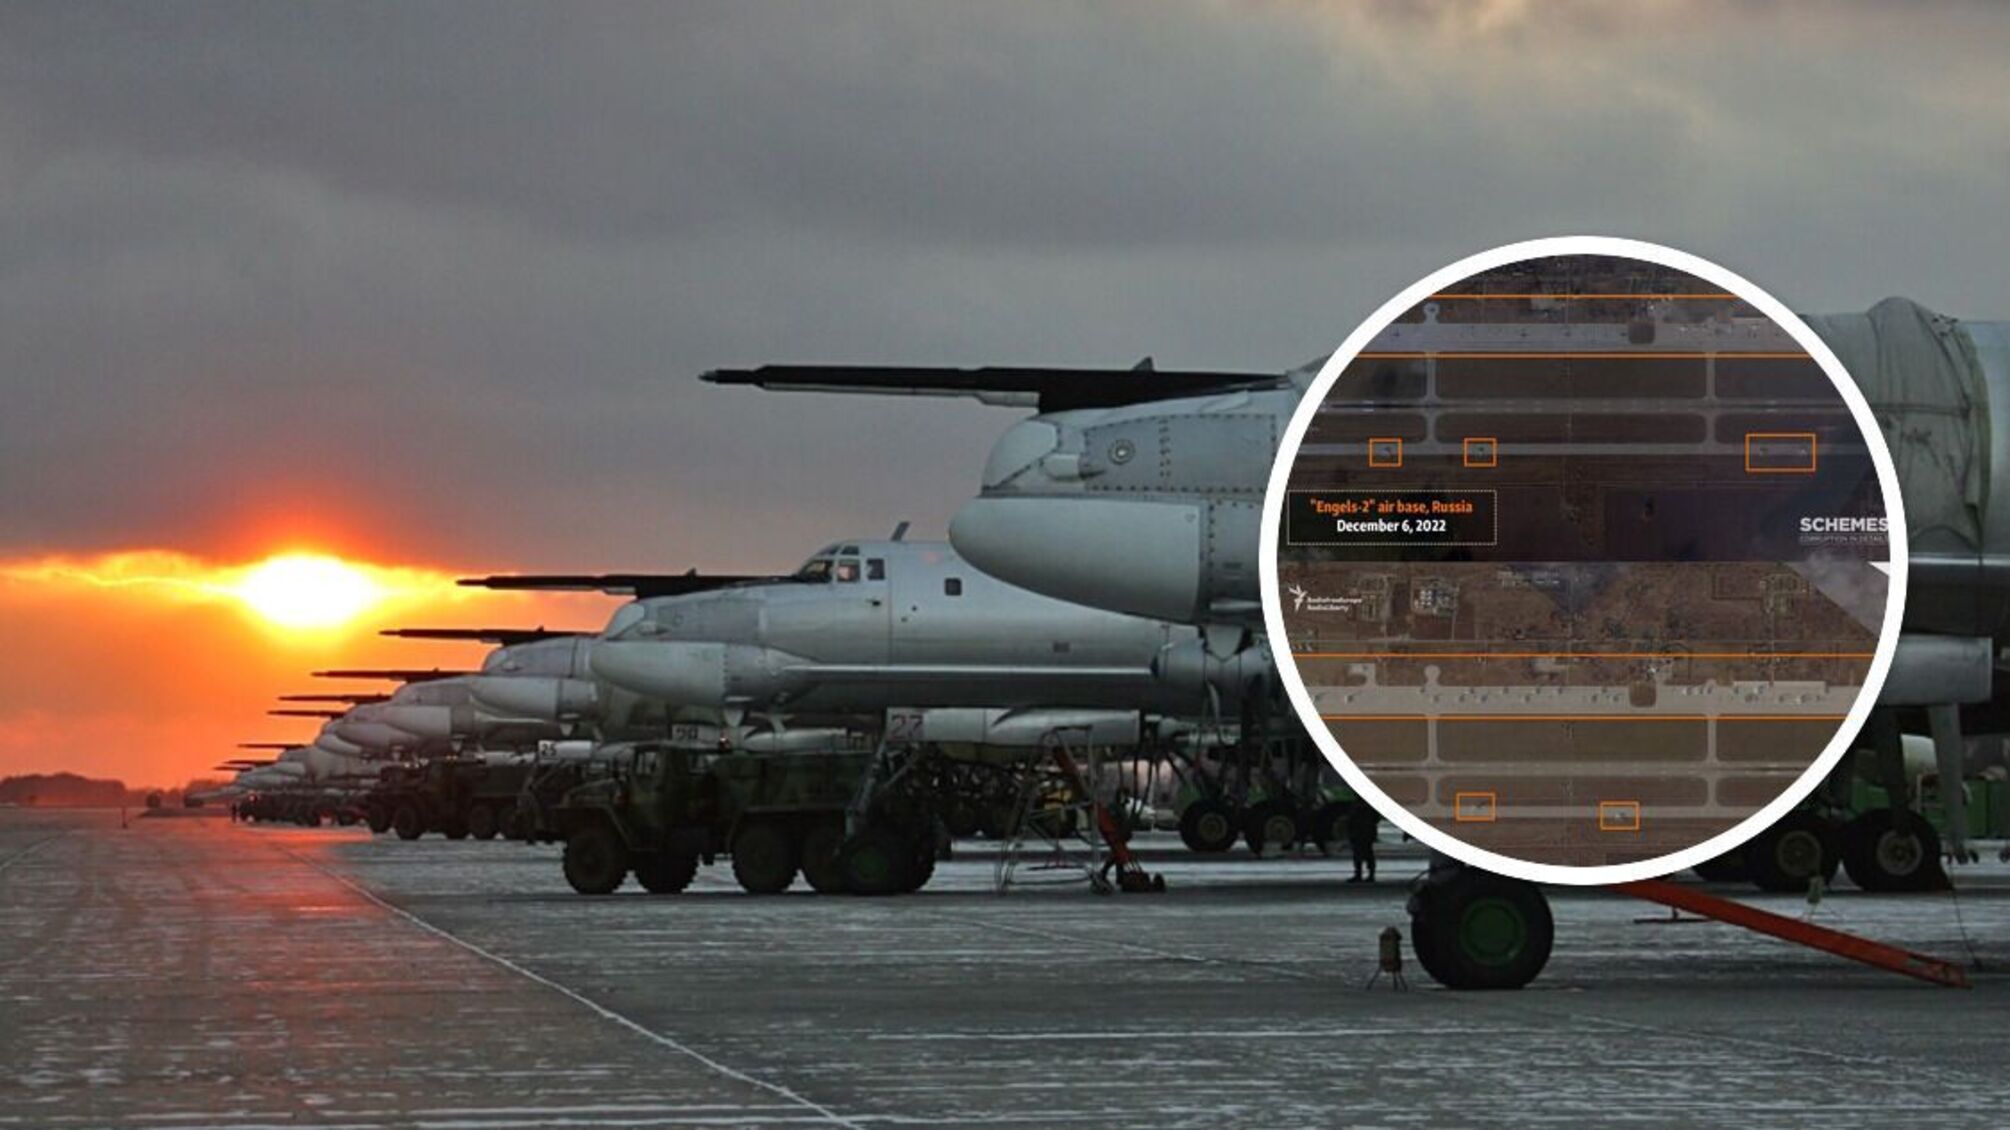 Нові фото авіабази в Енгельсі: в Ту-95 погризено ніс, частина літаків - 'мертві'